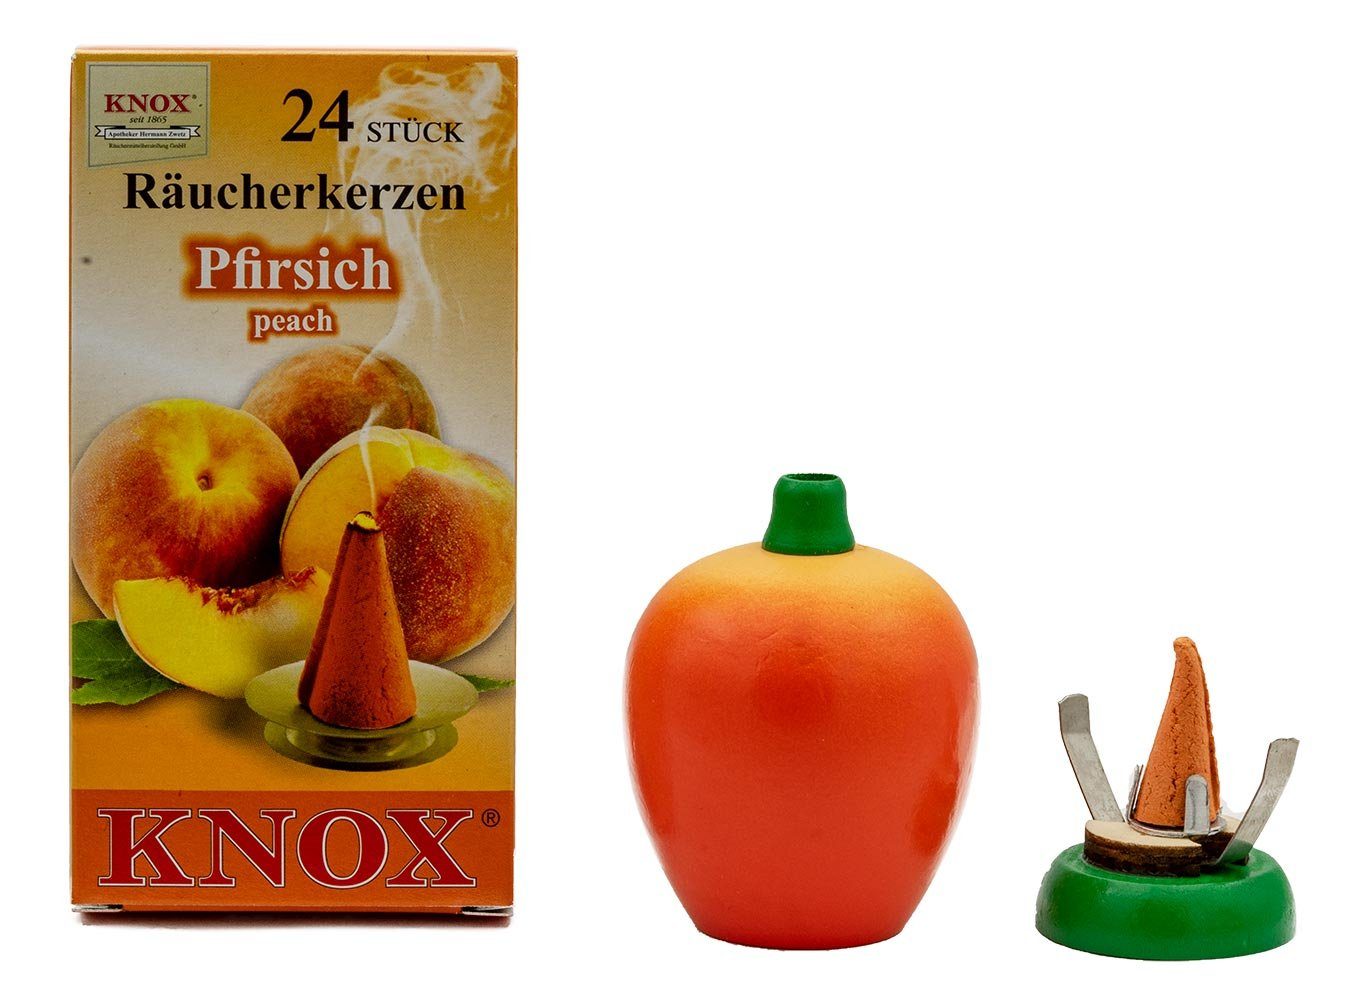 KNOX Räucherhaus Pfirsich Set, Räucherkerzen mit Räucherfigur inkl. Pfirsich Pfirsich-Duft 24